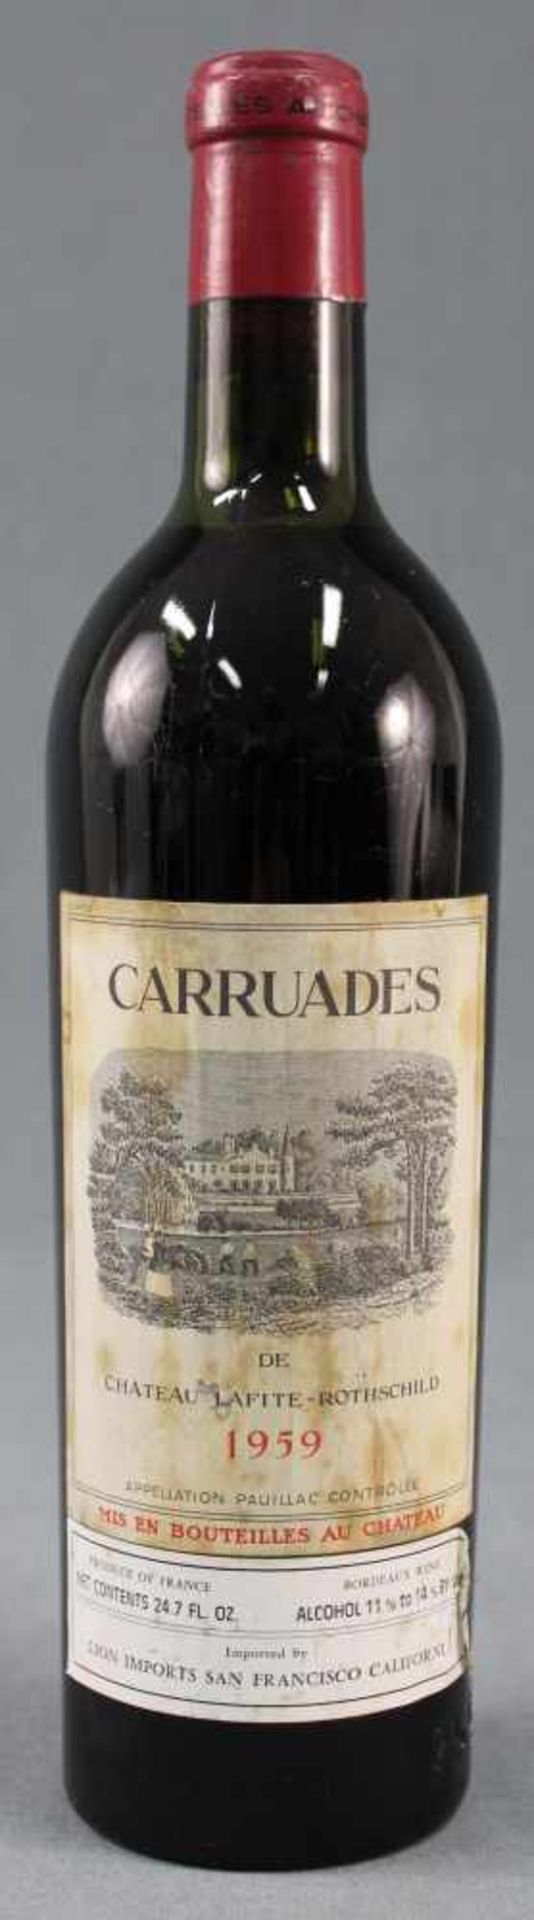 1959 Carruades de Chateau Lafite - Rothschild. Paulliac AC.Eine ganze Flasche Rotwein 75 cl.